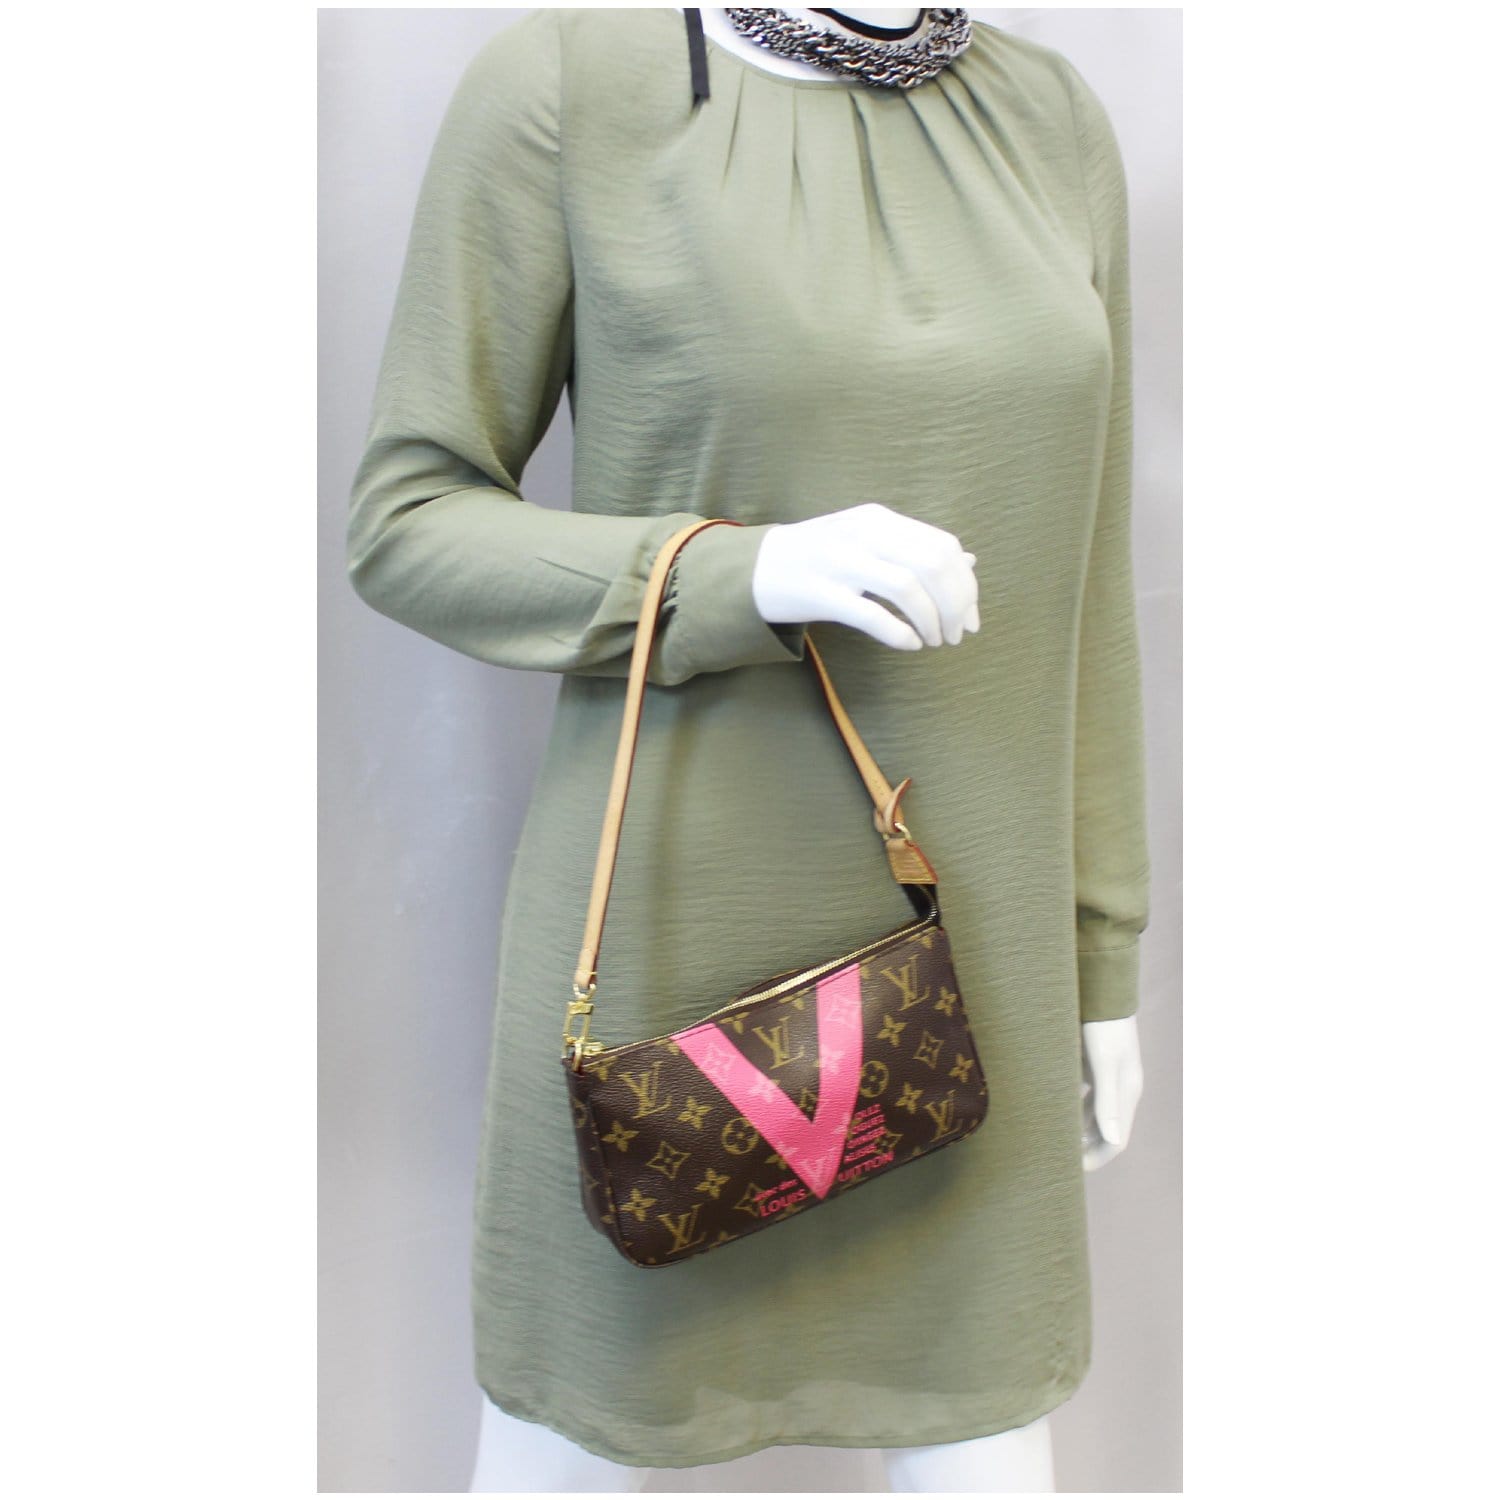 Louis Vuitton Pochette Handbag, Limited Edition in Pink Monogram